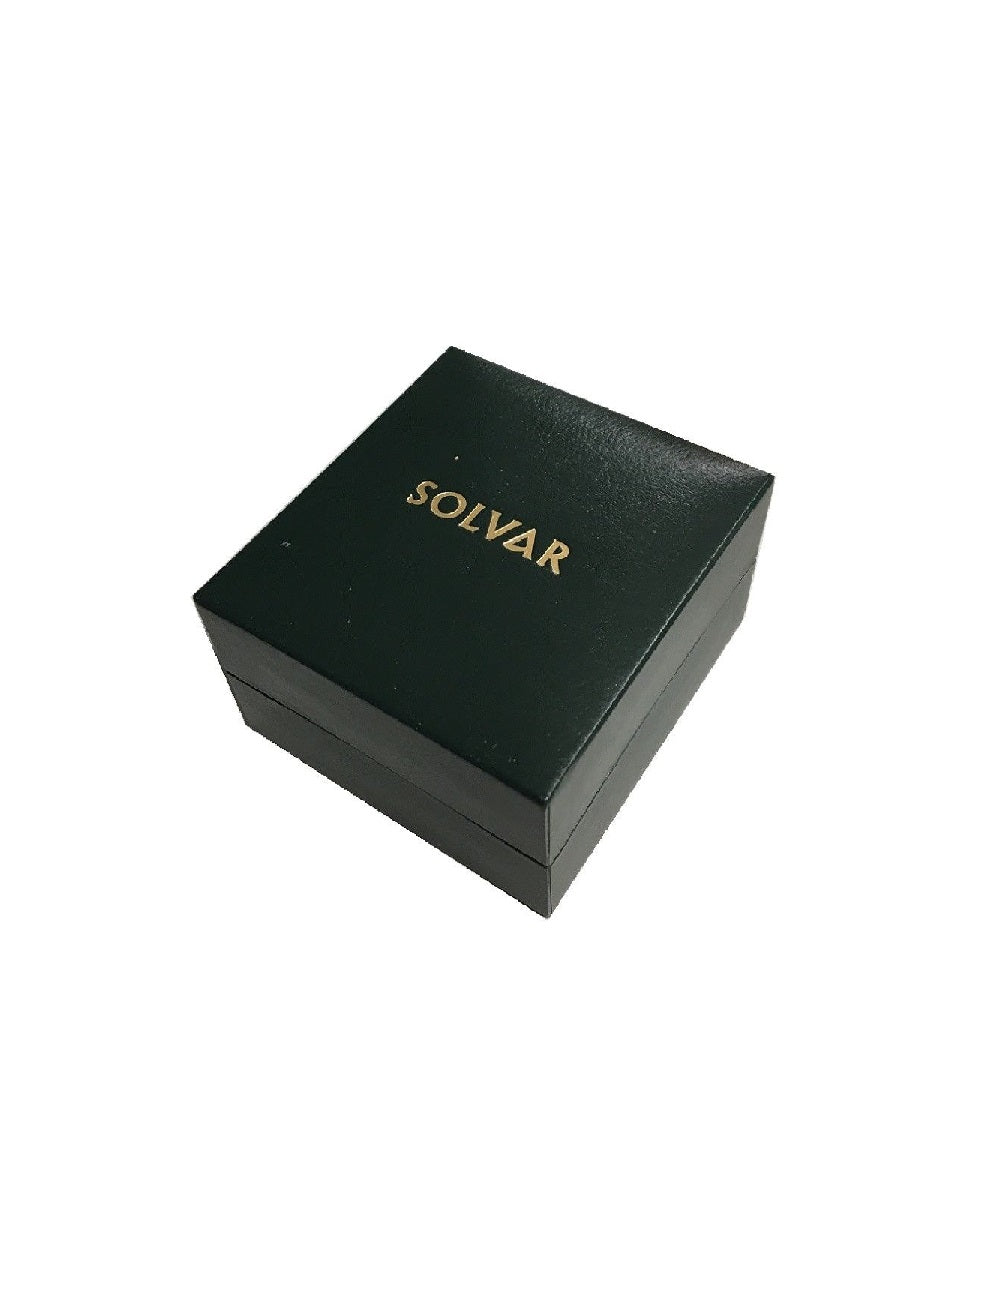 Solvar 14k Gold Shiny Shamrock Charm s8072 - Skellig Gift Store